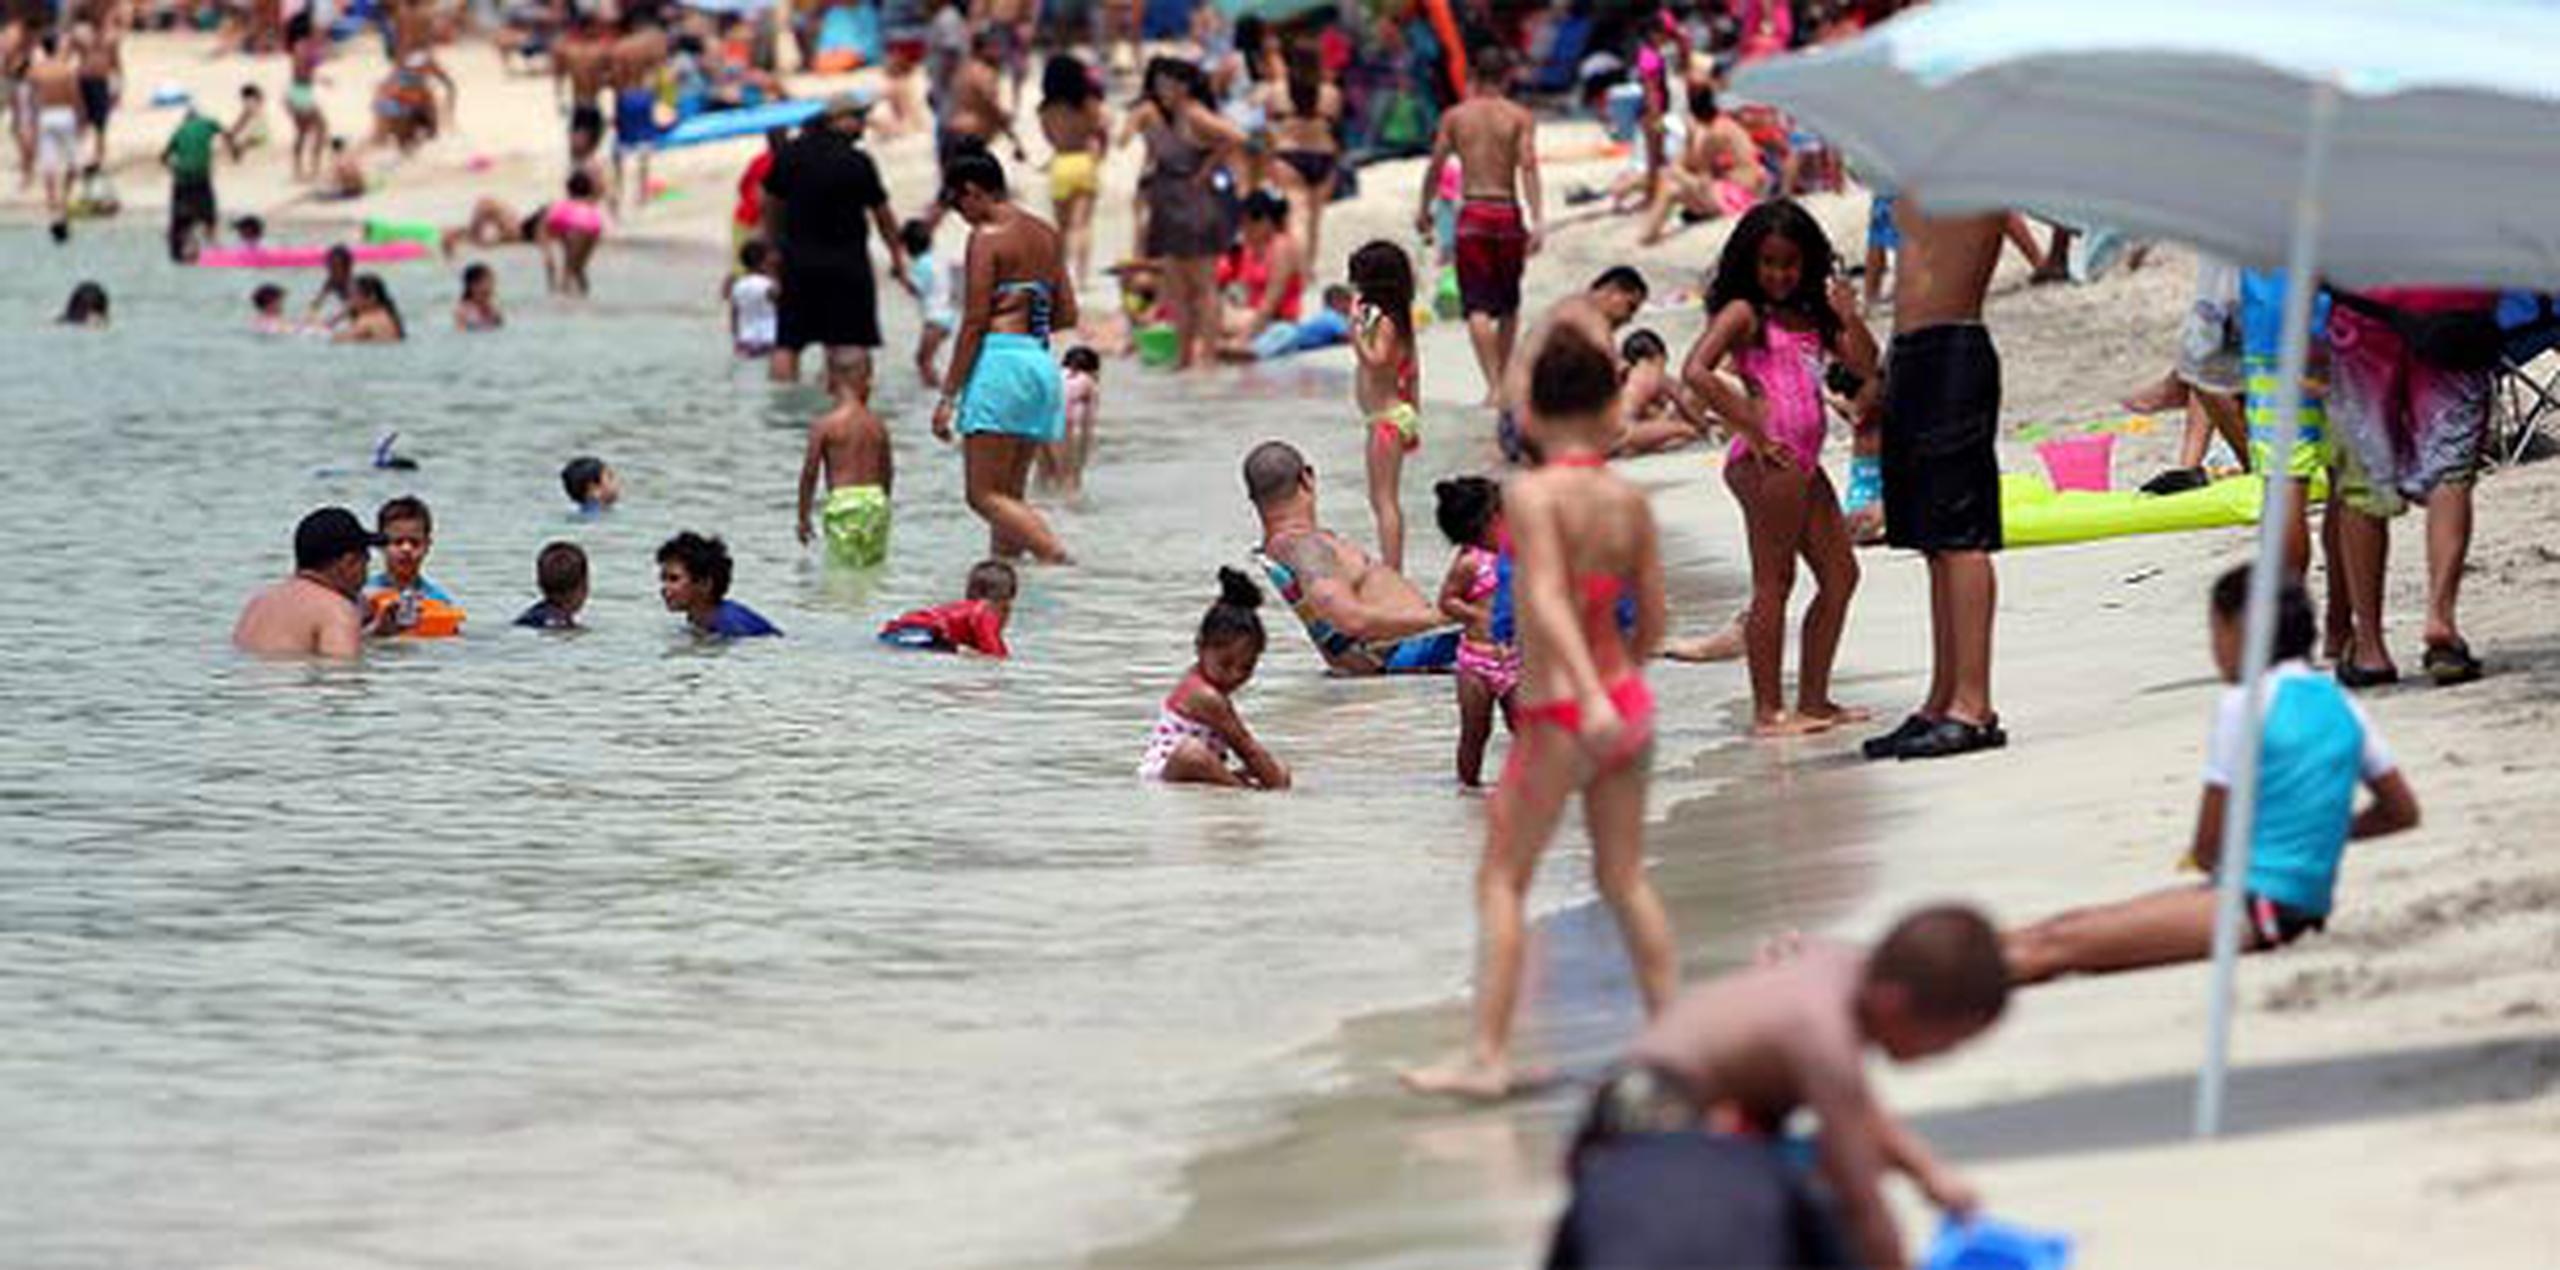 Por si no lo sabía, en Puerto Rico existen más de 1,125 playas, así que no se arriesgue, vaya a las que se sabe que no están contaminadas. (Archivo)